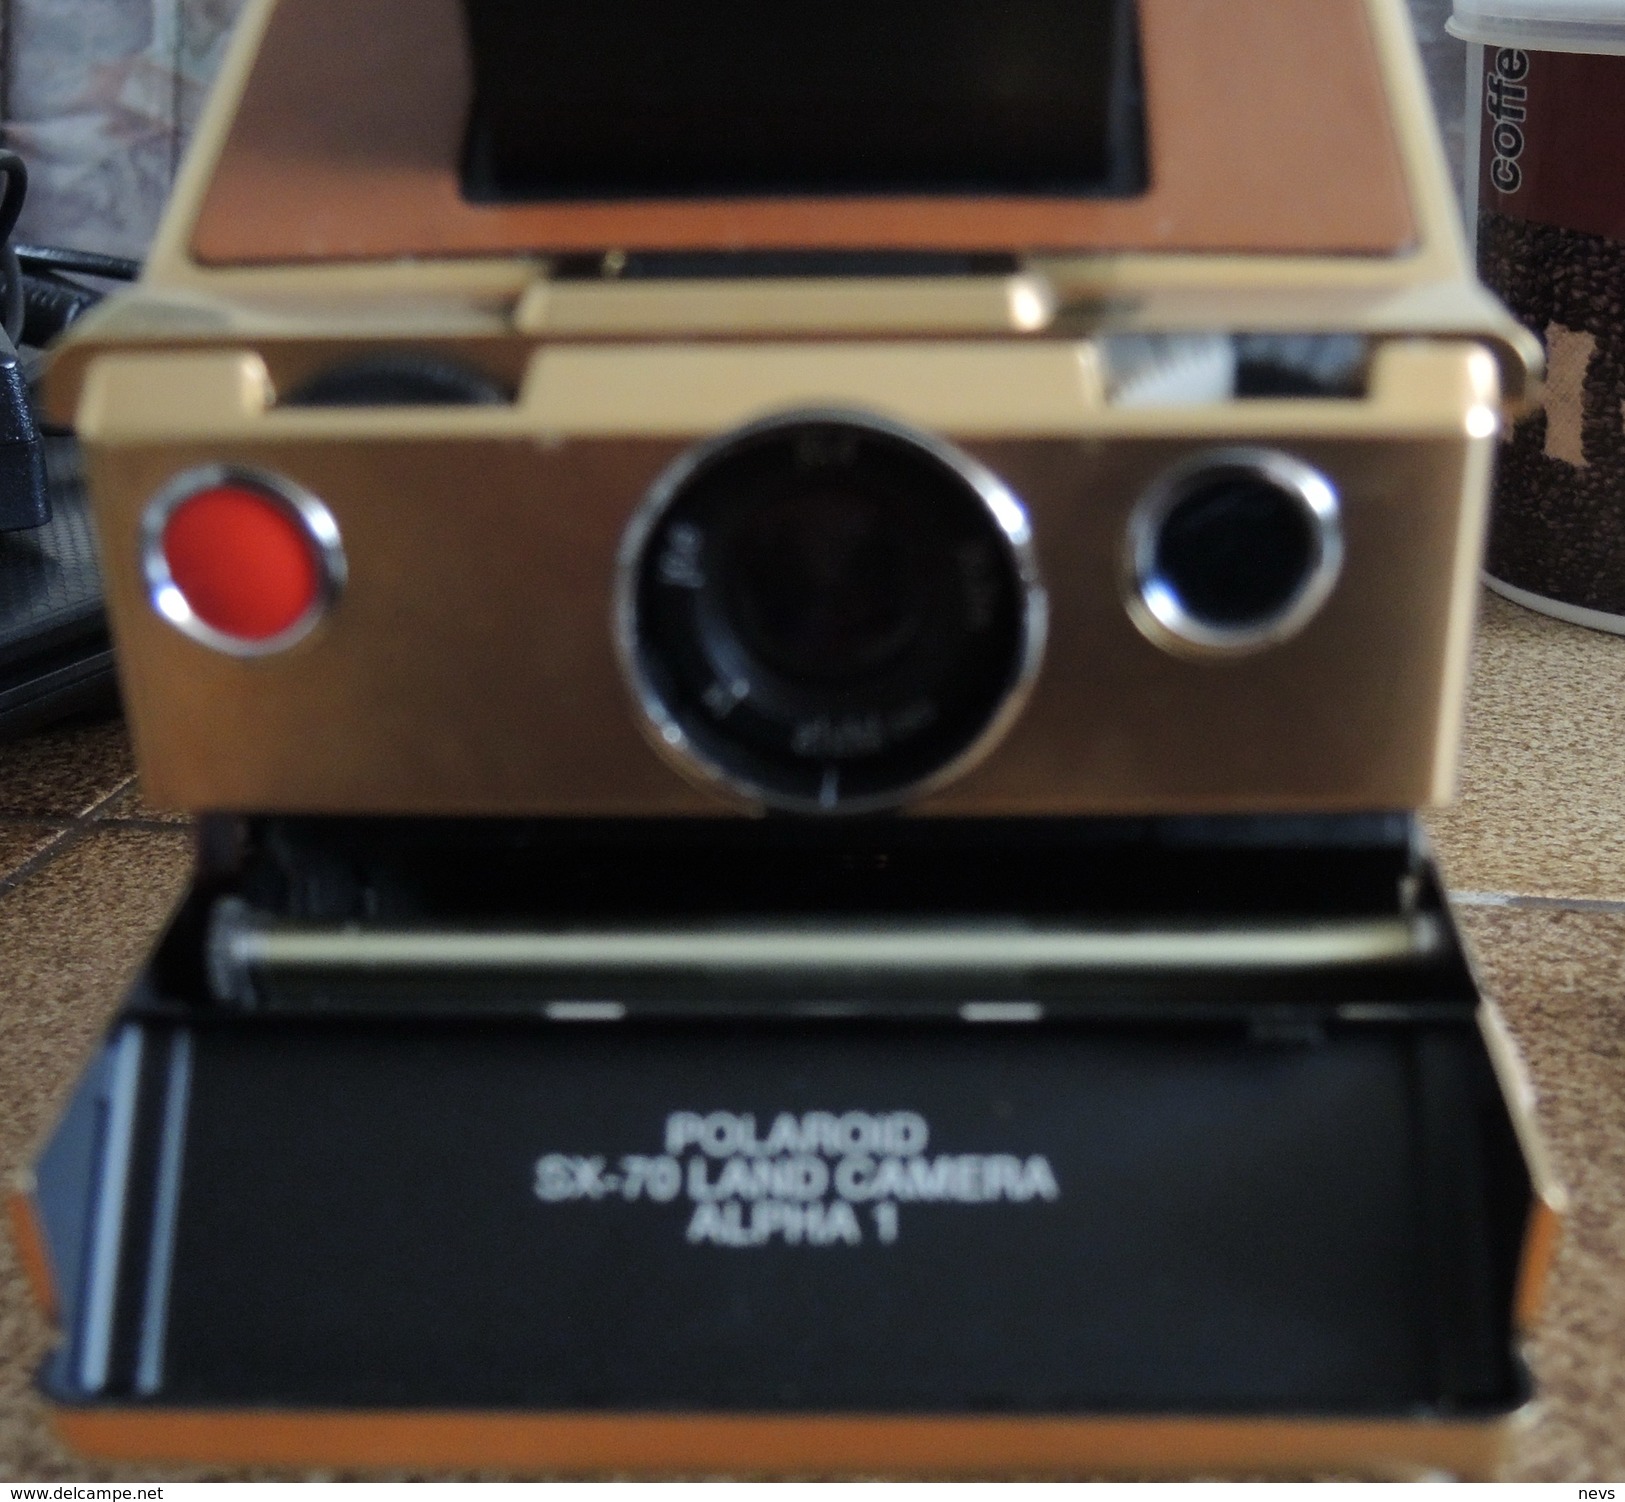 Goldene Polaroid Kamera Typ SX70  Gold 24k Edition Mildred Scheel Limitierte Auflage von 1000 Stck. Nr. 27